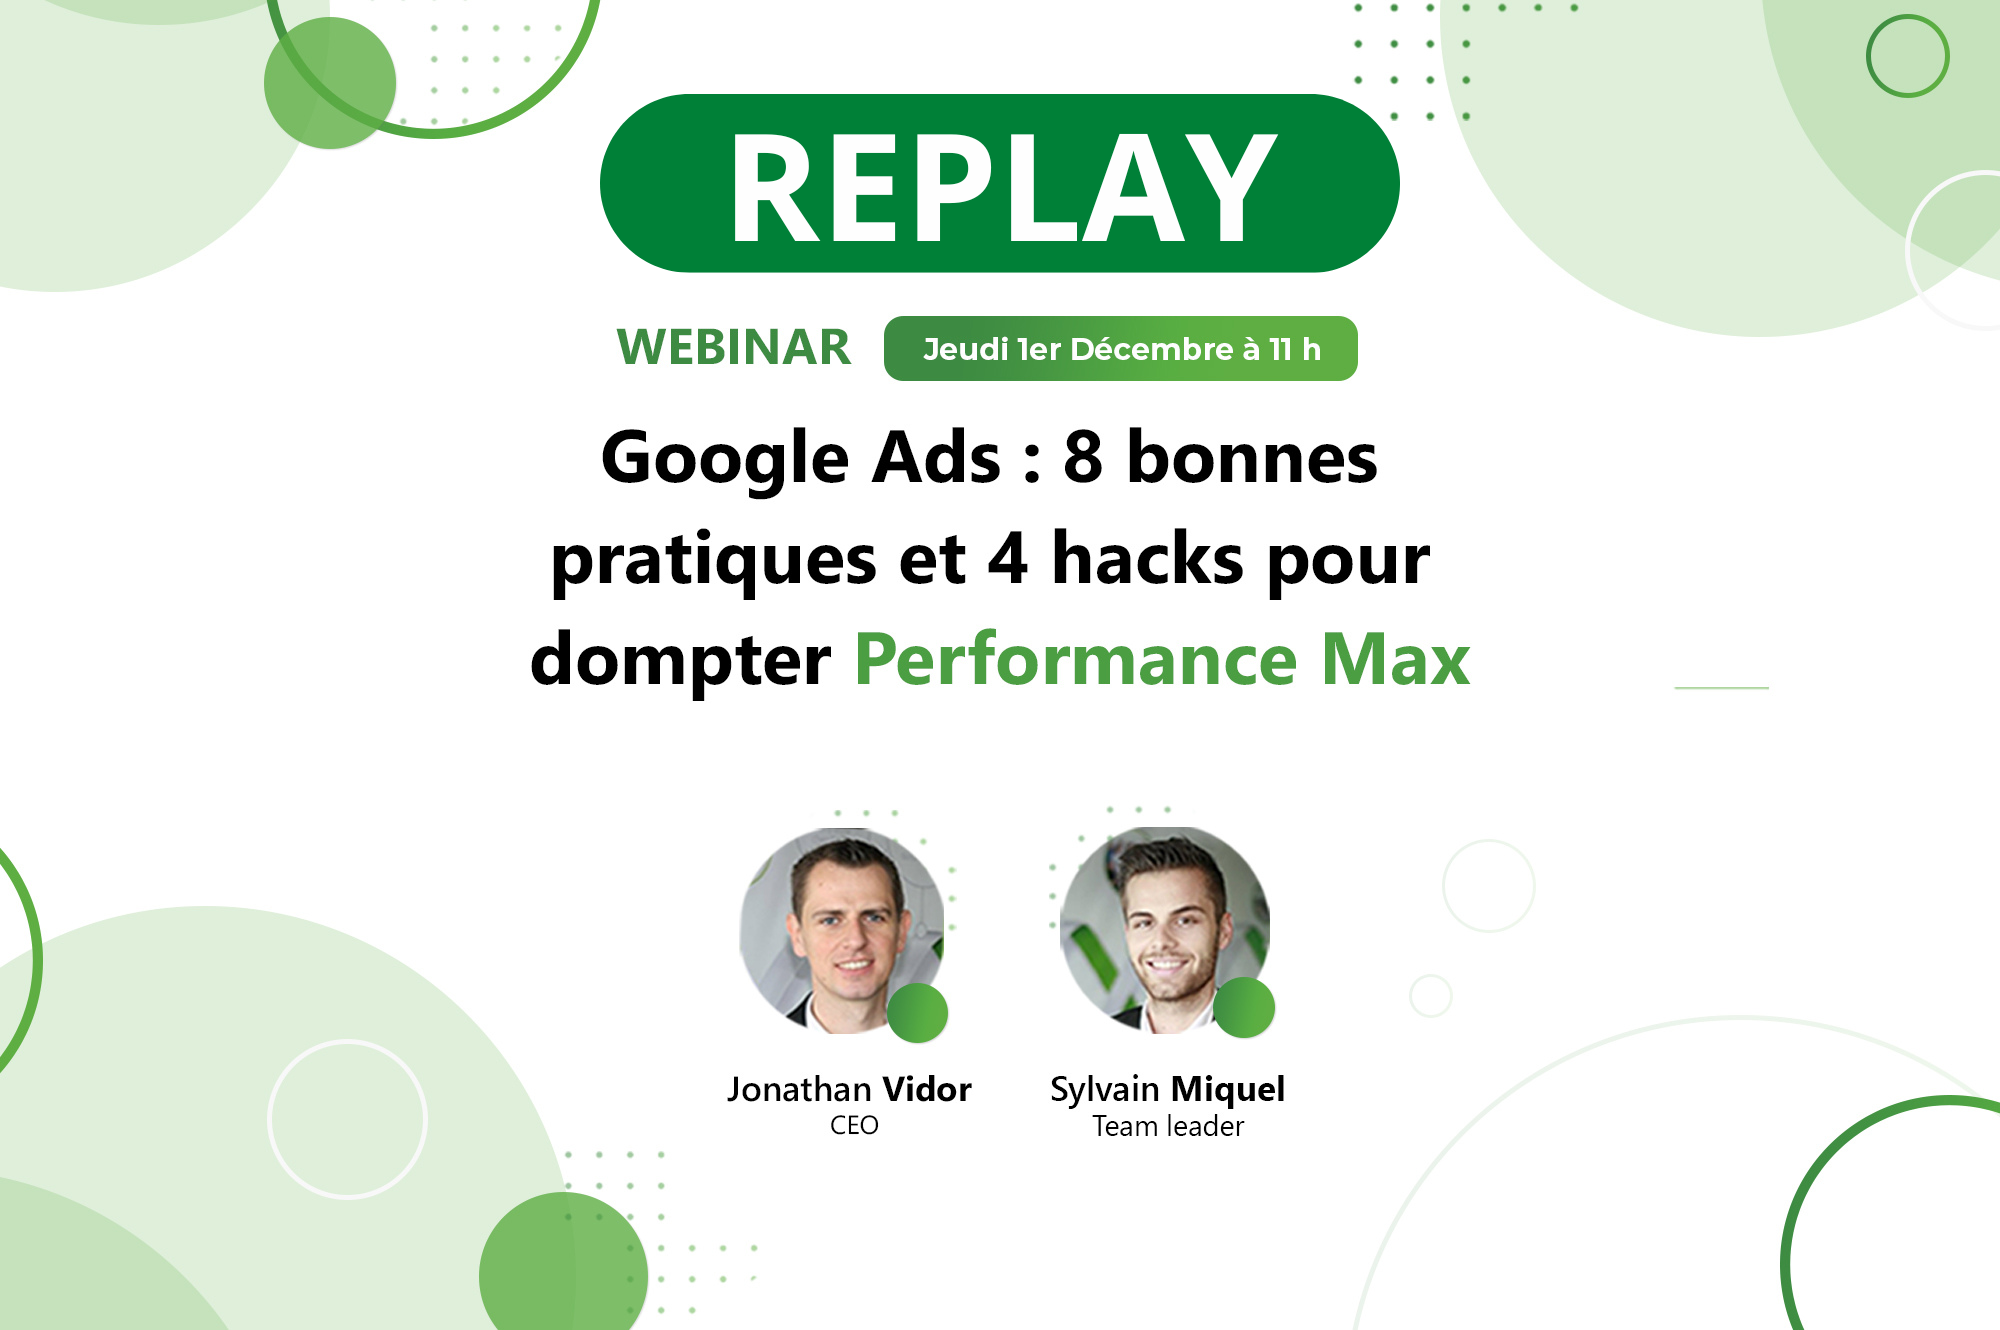 REPLAY Webinar -> Google Ads : 8 bonnes pratiques et 4 hacks pour dompter Performance Max